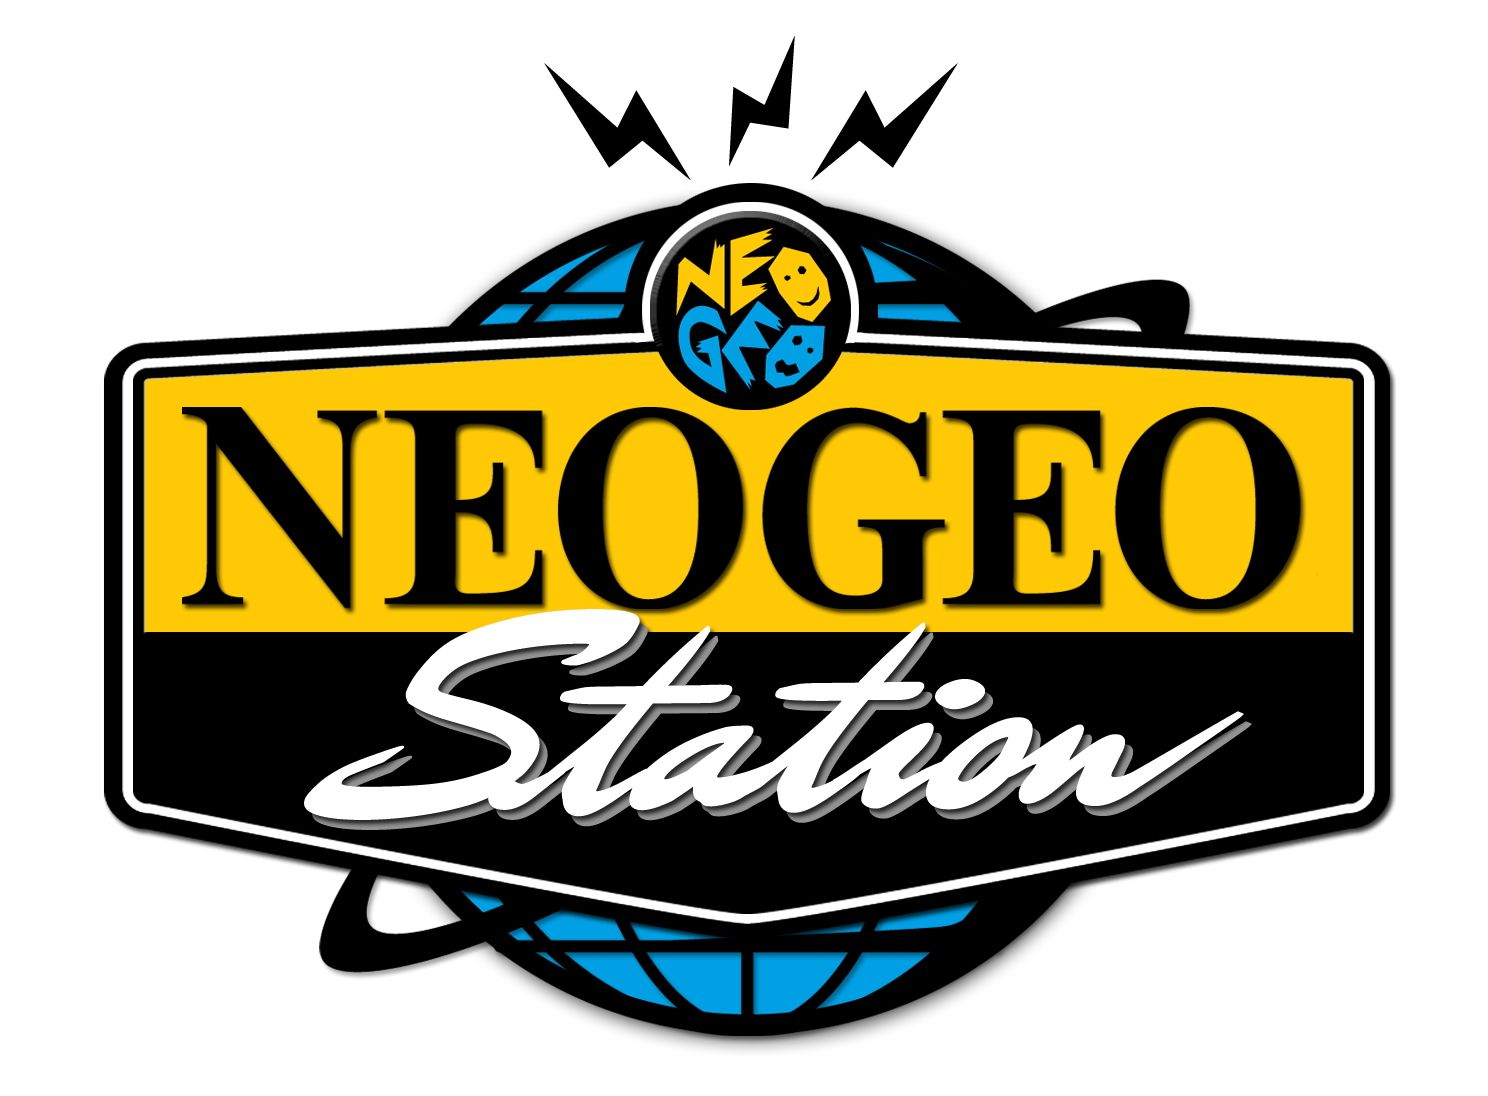 neo geo games free online